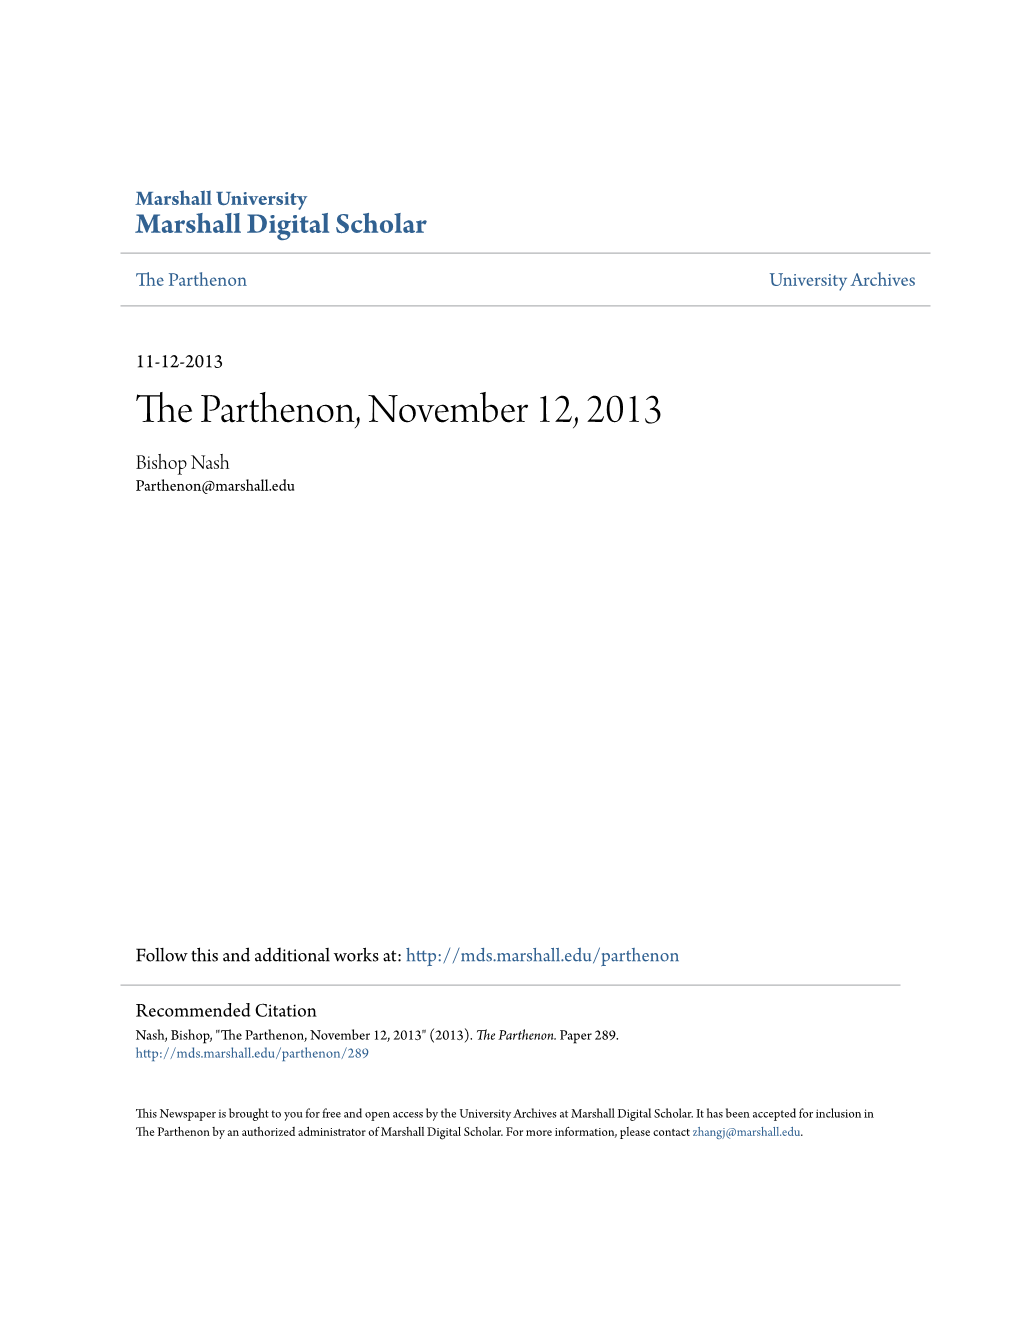 The Parthenon, November 12, 2013